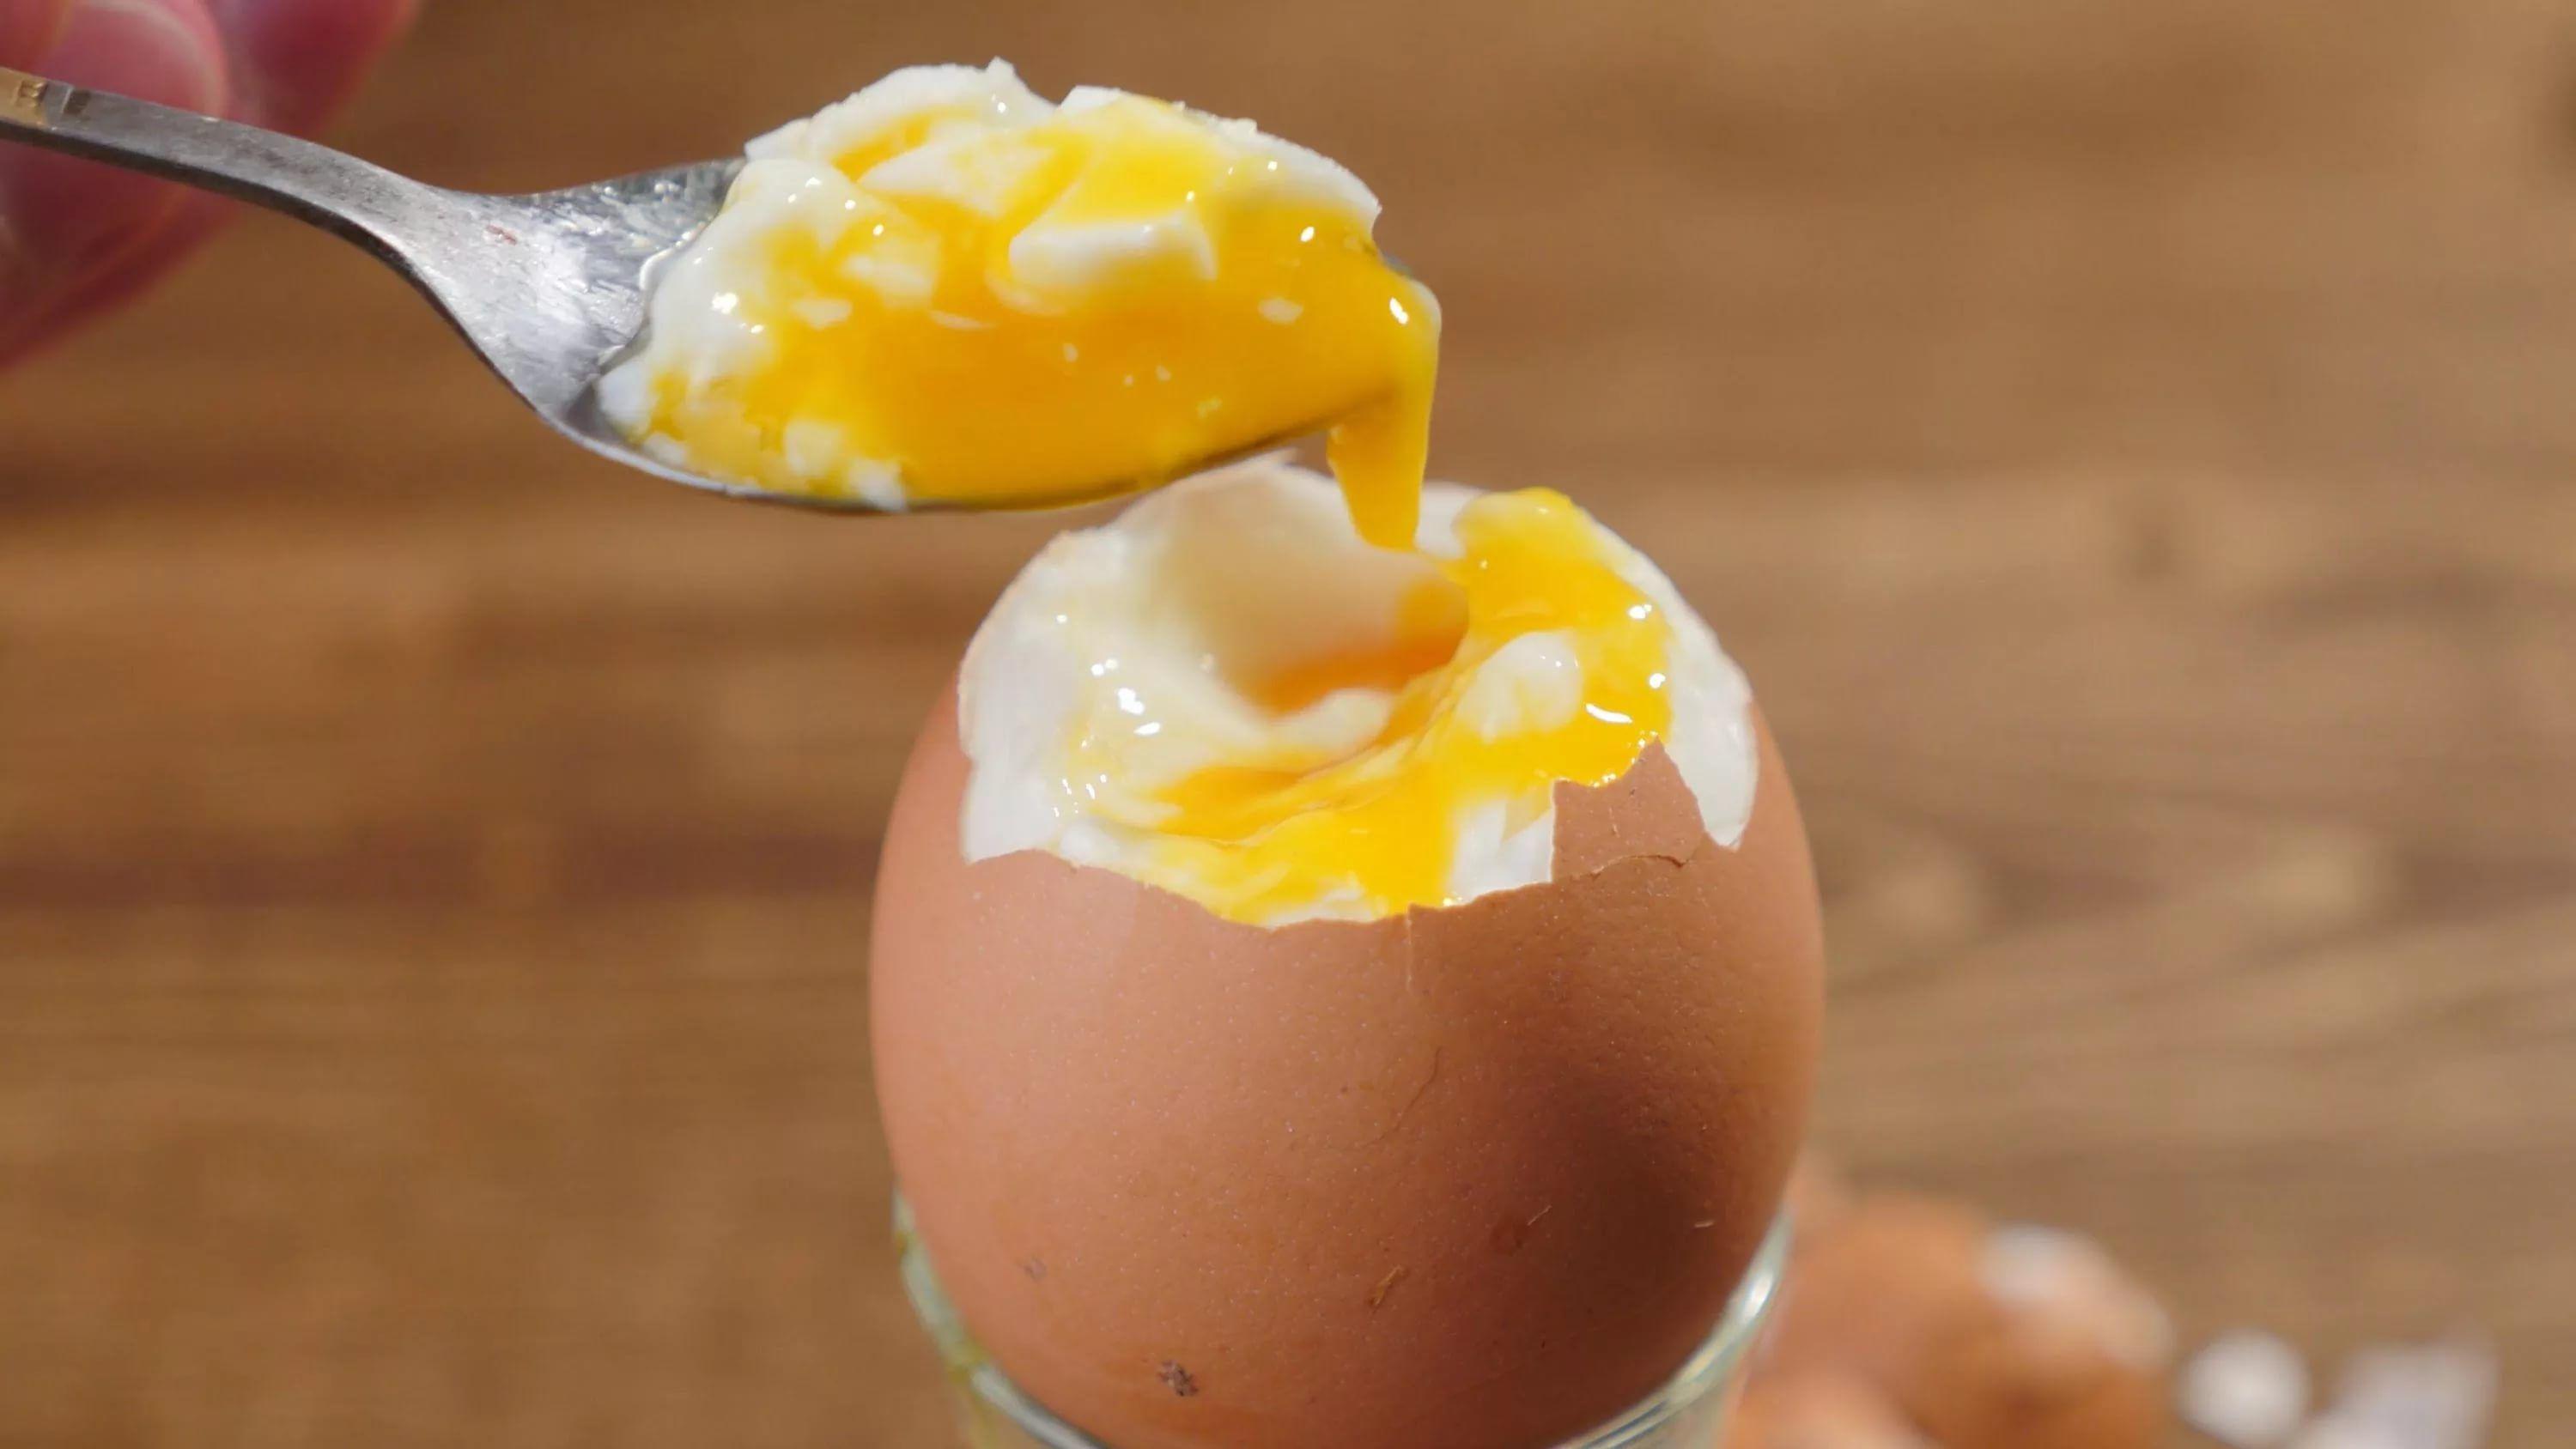 10 способов использовать яйца, о которых вы не знали